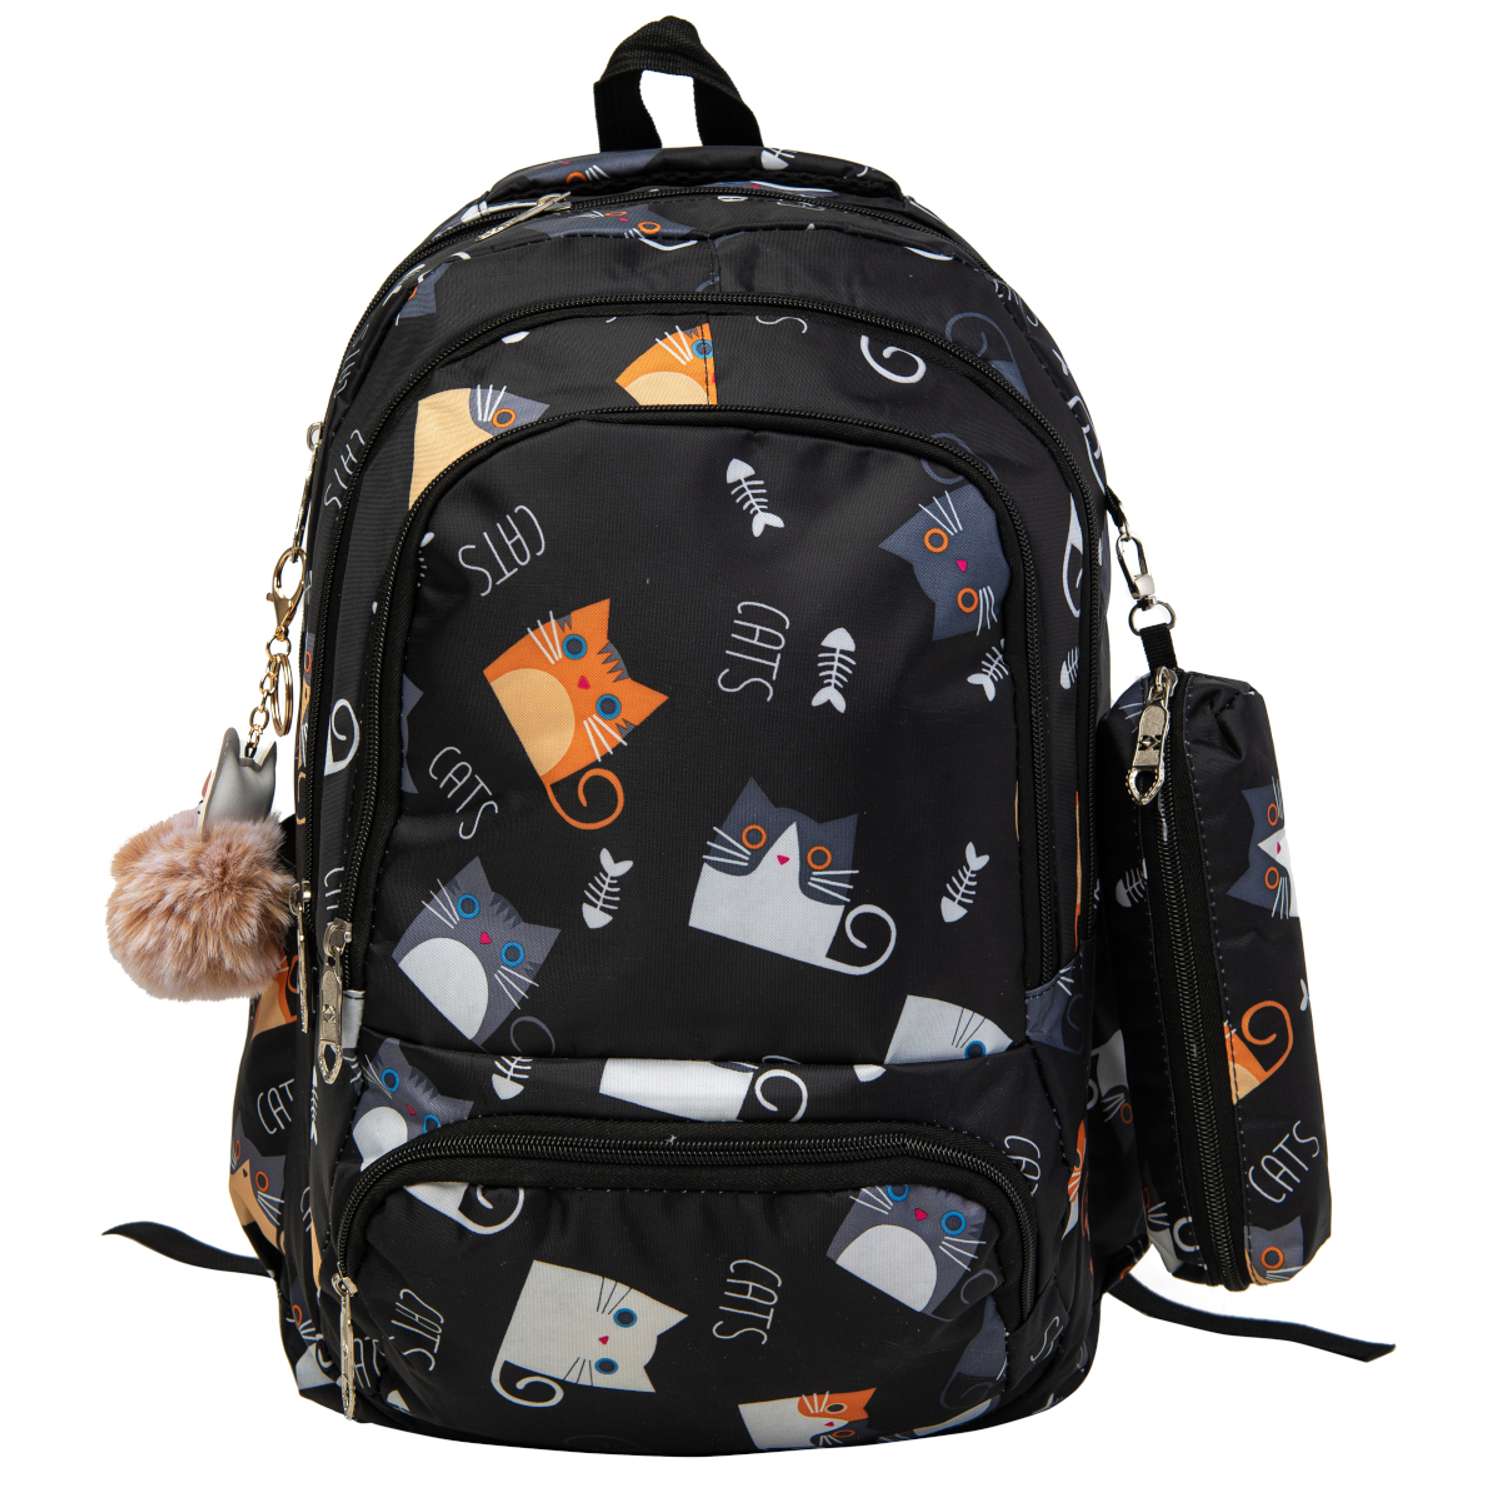 Рюкзак с брелоком киска O GO для девочки с кошкой и пеналом - фото 1